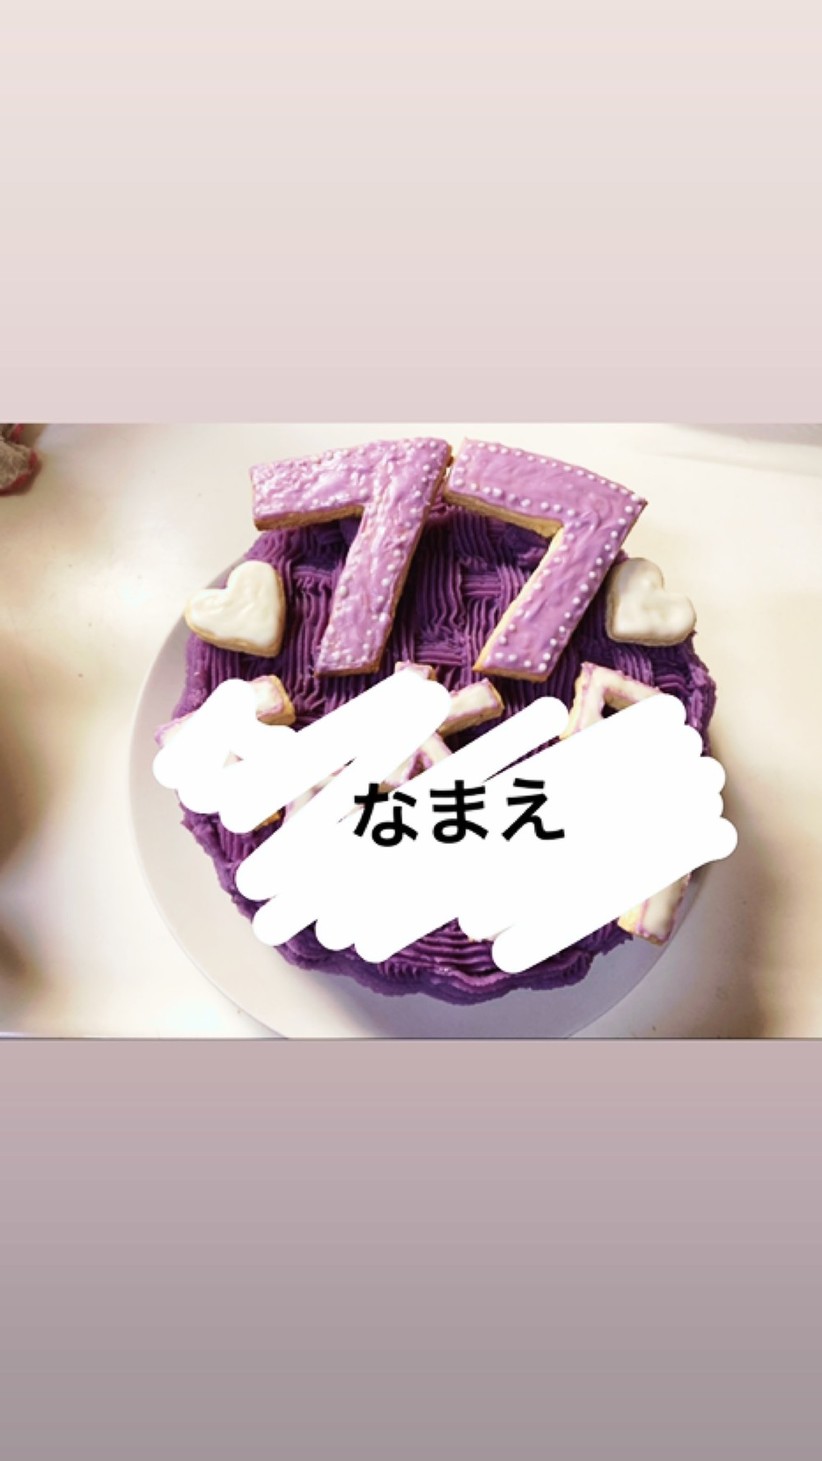 【喜寿祝い】見た目も味も大人な紫芋ケーキの画像